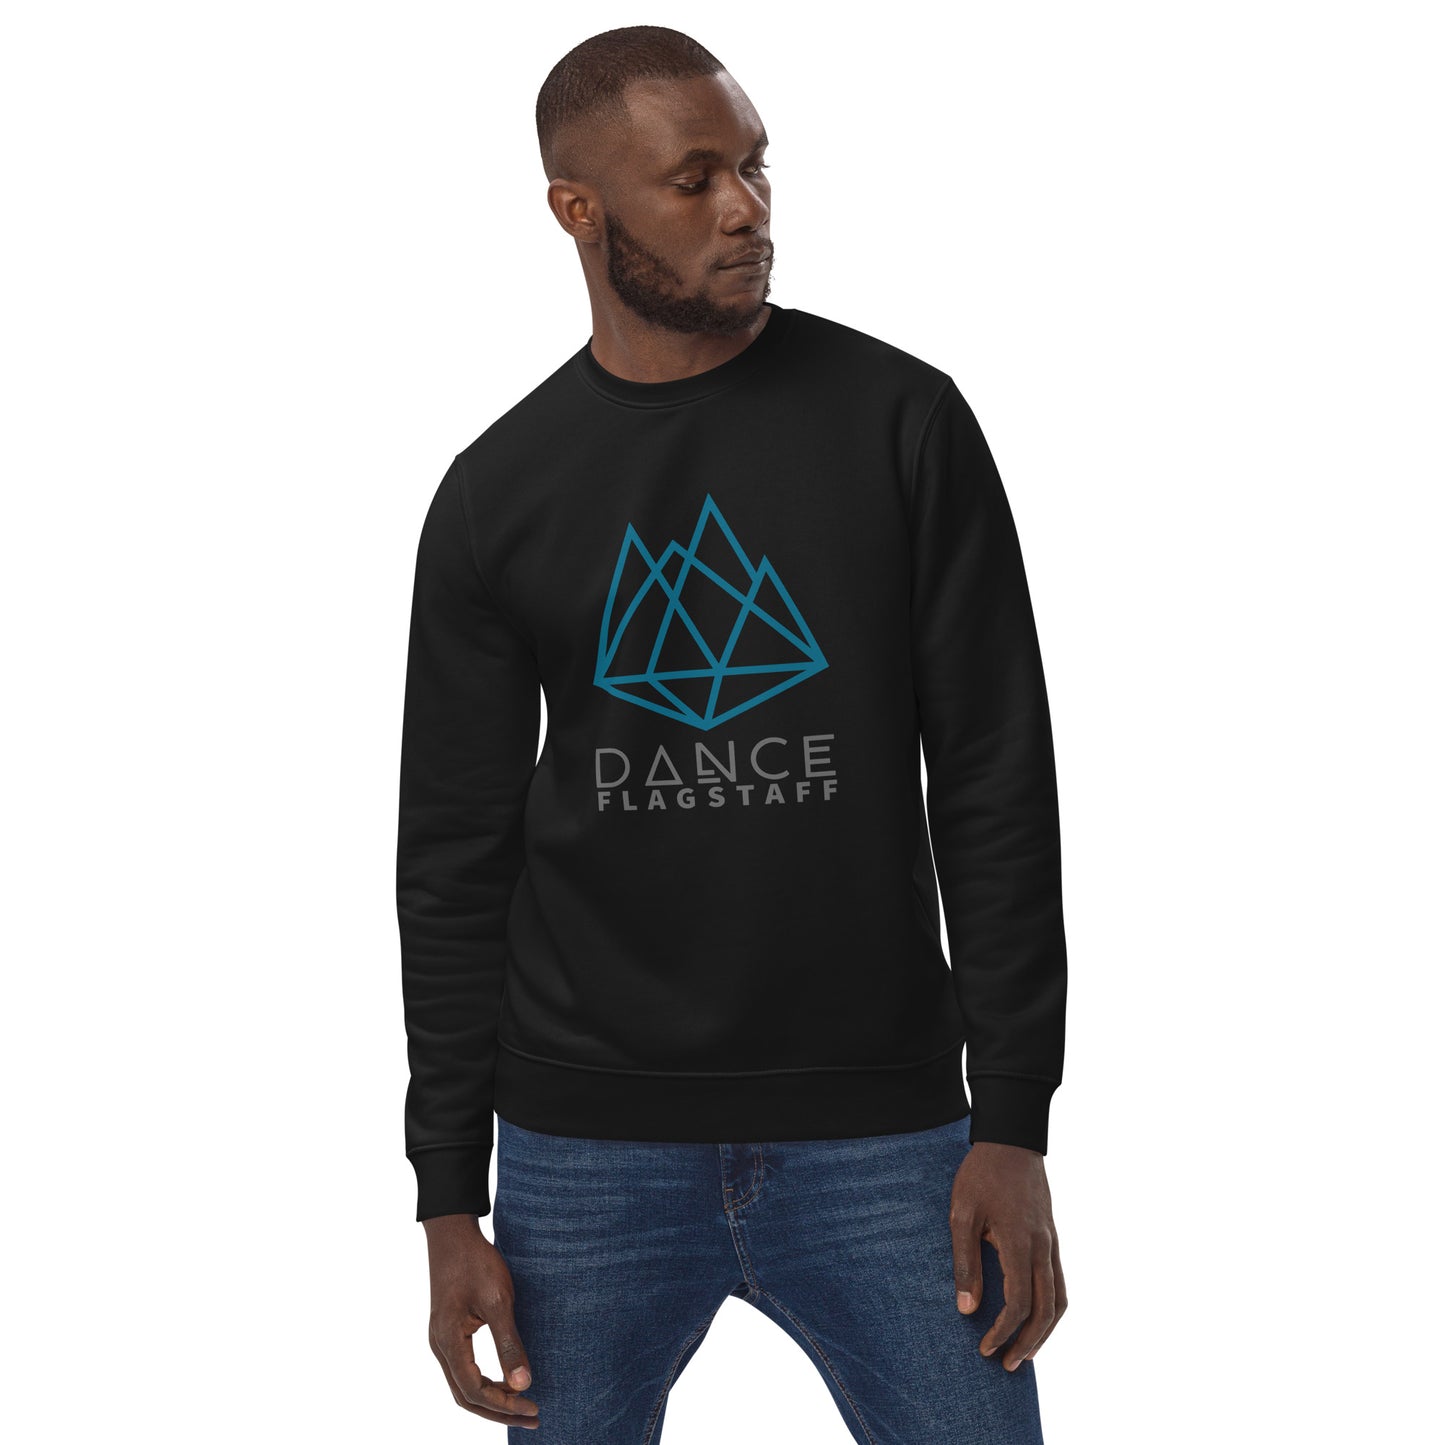 Dance Flagstaff Unisex eco sweatshirt